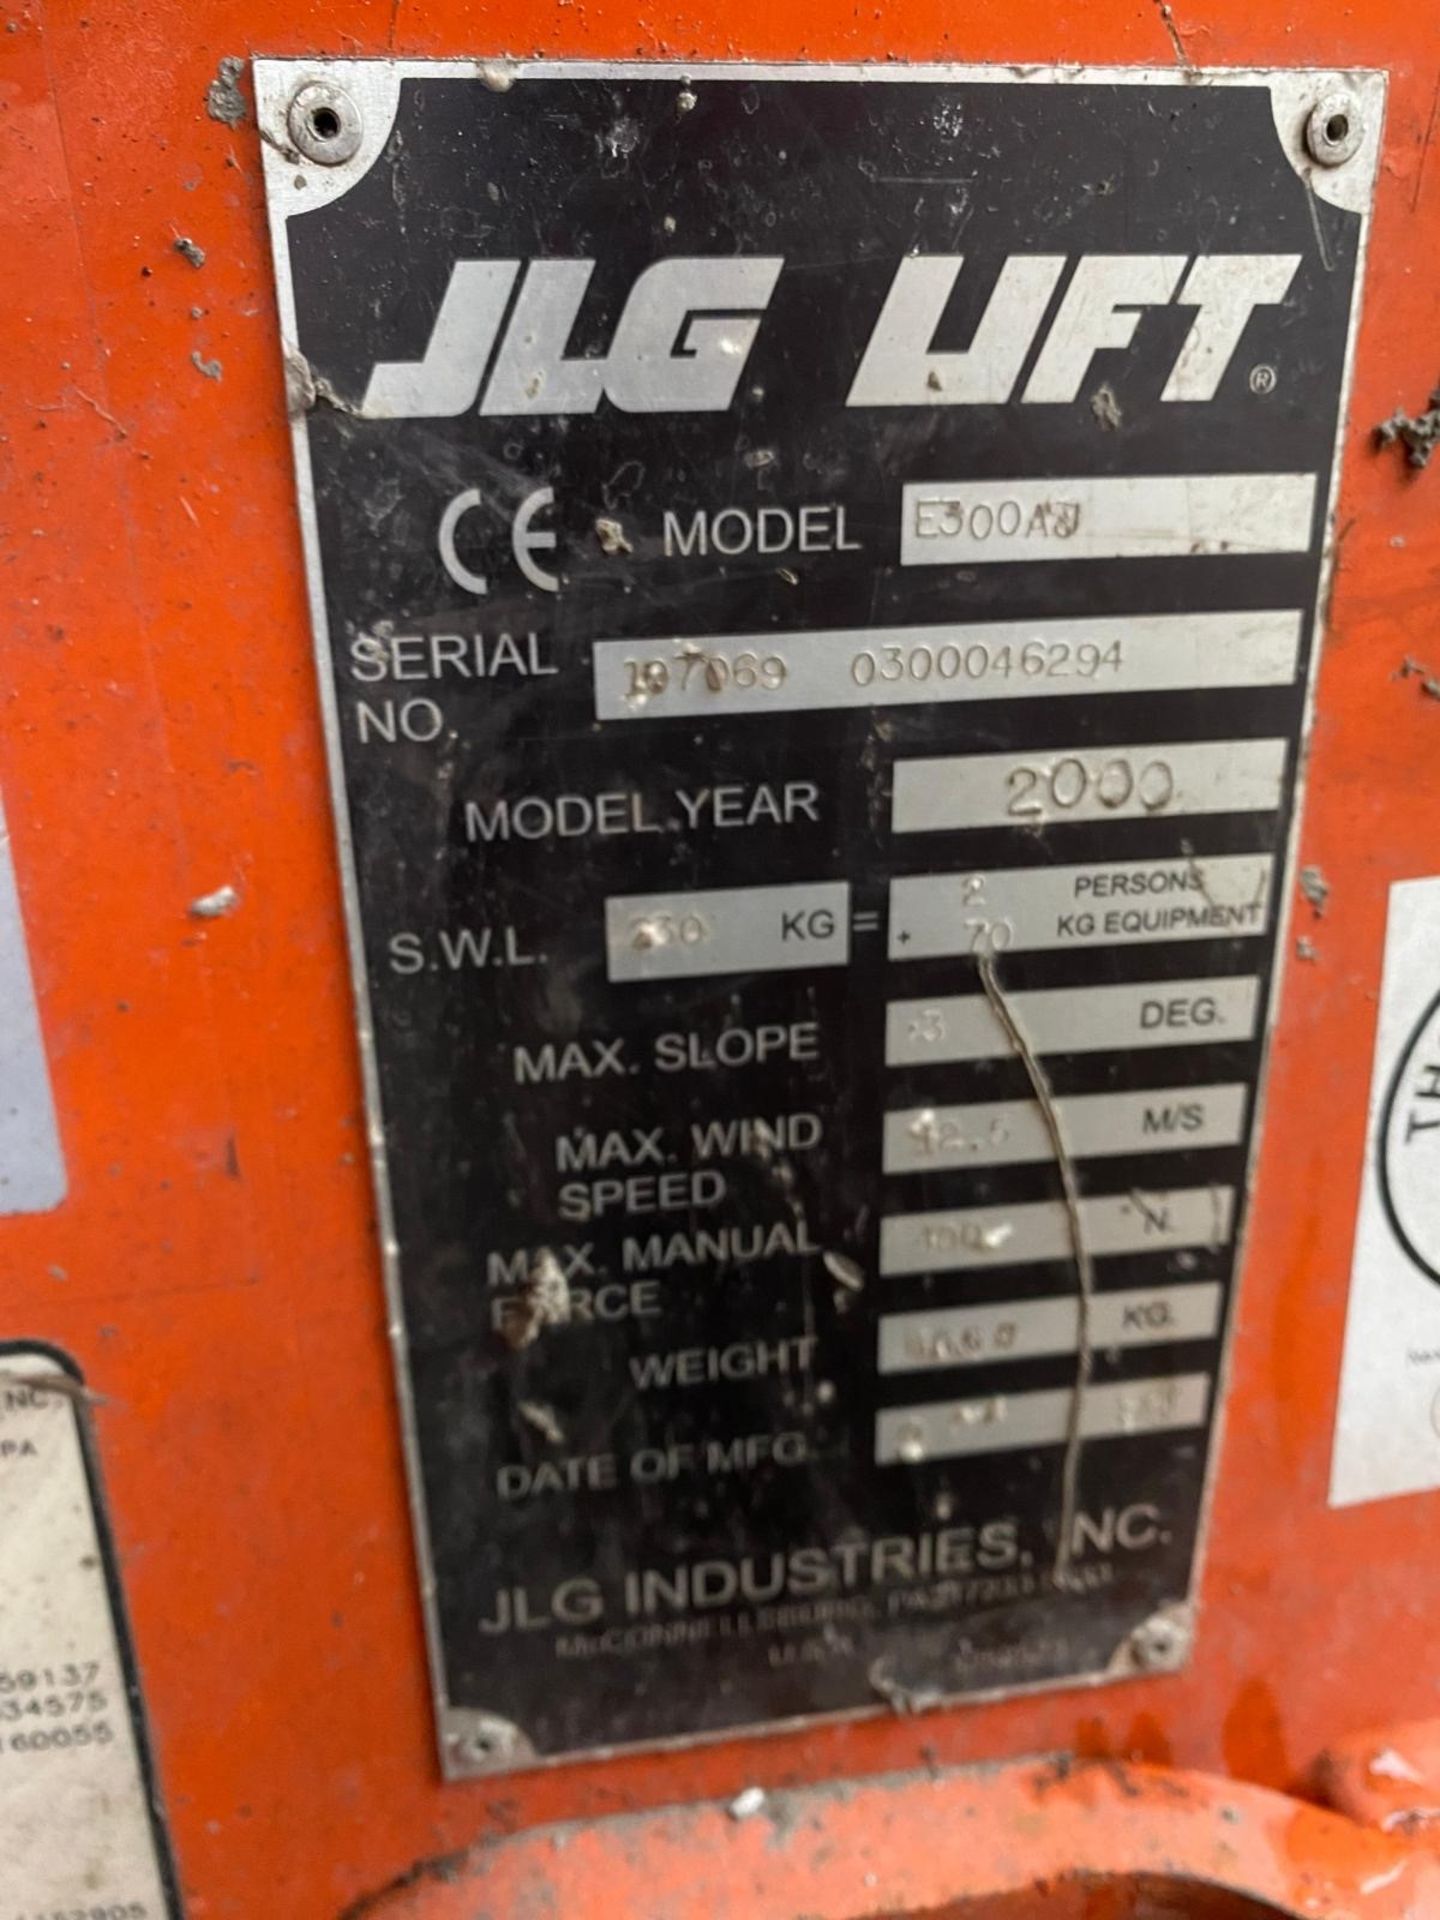 JLG Model E300 Cherry Picker Lift (2000 Model) - Image 3 of 12